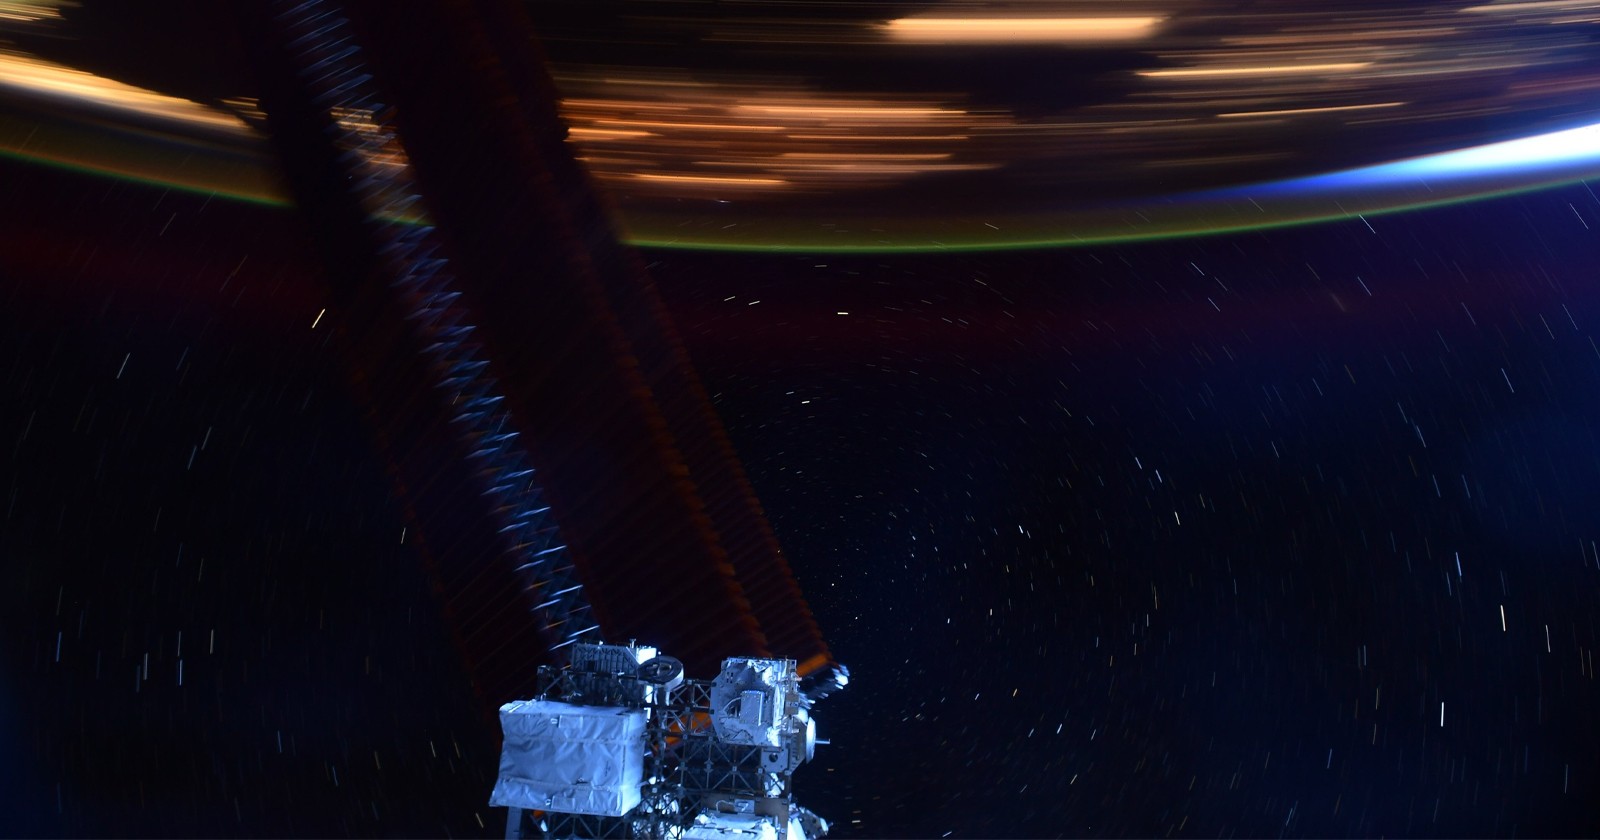 عکس گرفته شده از ISS تصور می کند که ایستگاه فضایی با چه سرعتی حرکت می کند